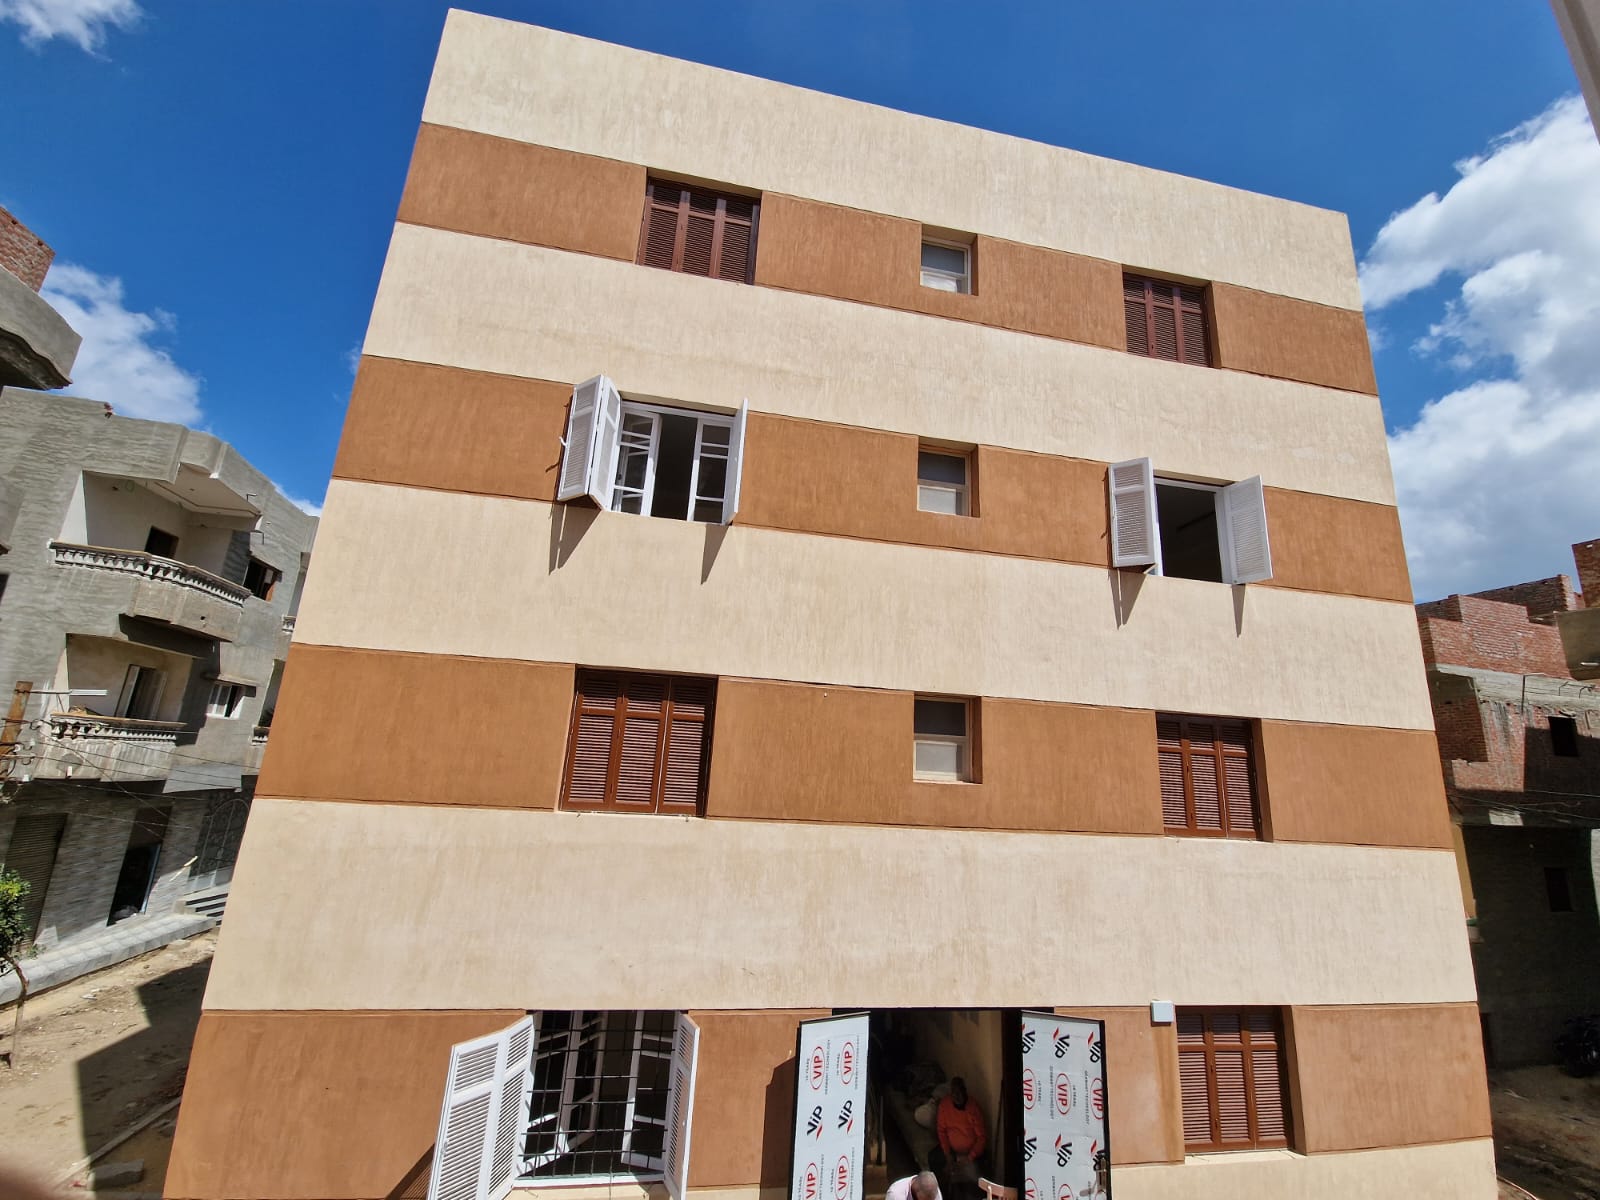 عمارة سكنية بقرية منية المرشد ضمن حياة كريمة